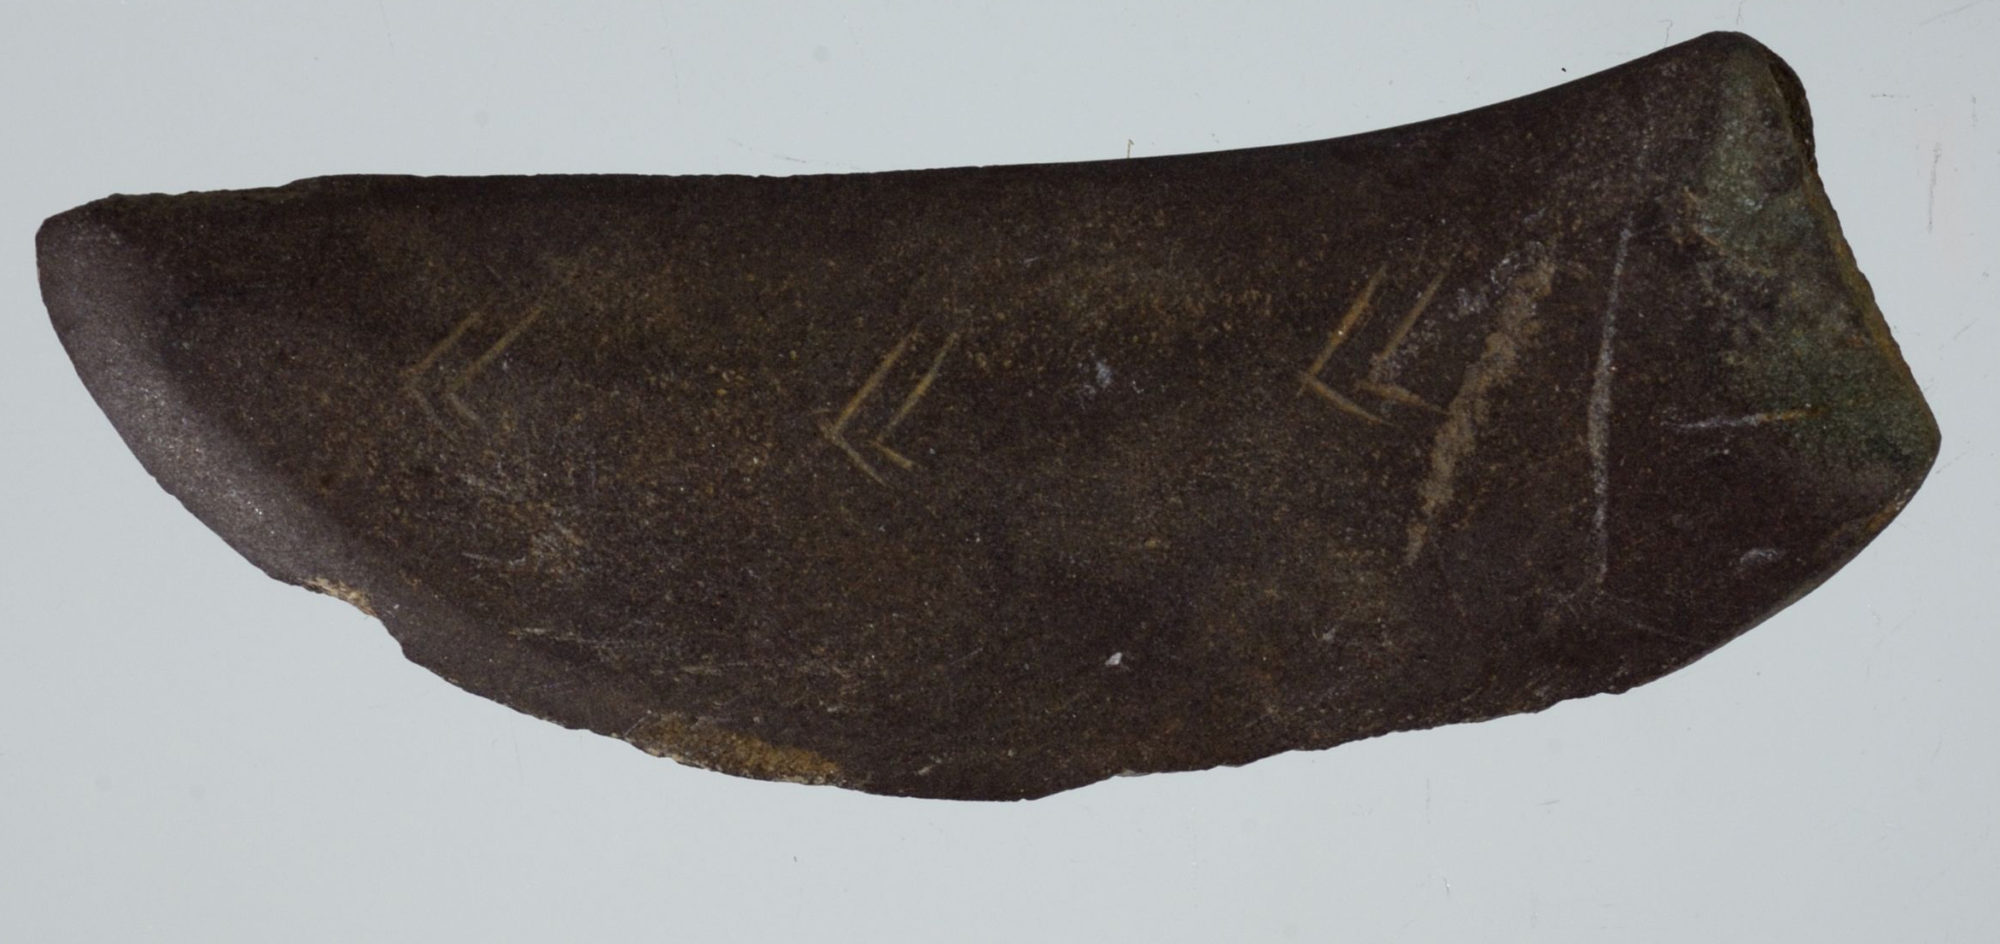 Fragment av skiferkniv med sikksakkdekor, fra Hemnes i Nordland. Foto: Ole Bjørn Pedersen, NTNU Vitenskapsmuseet